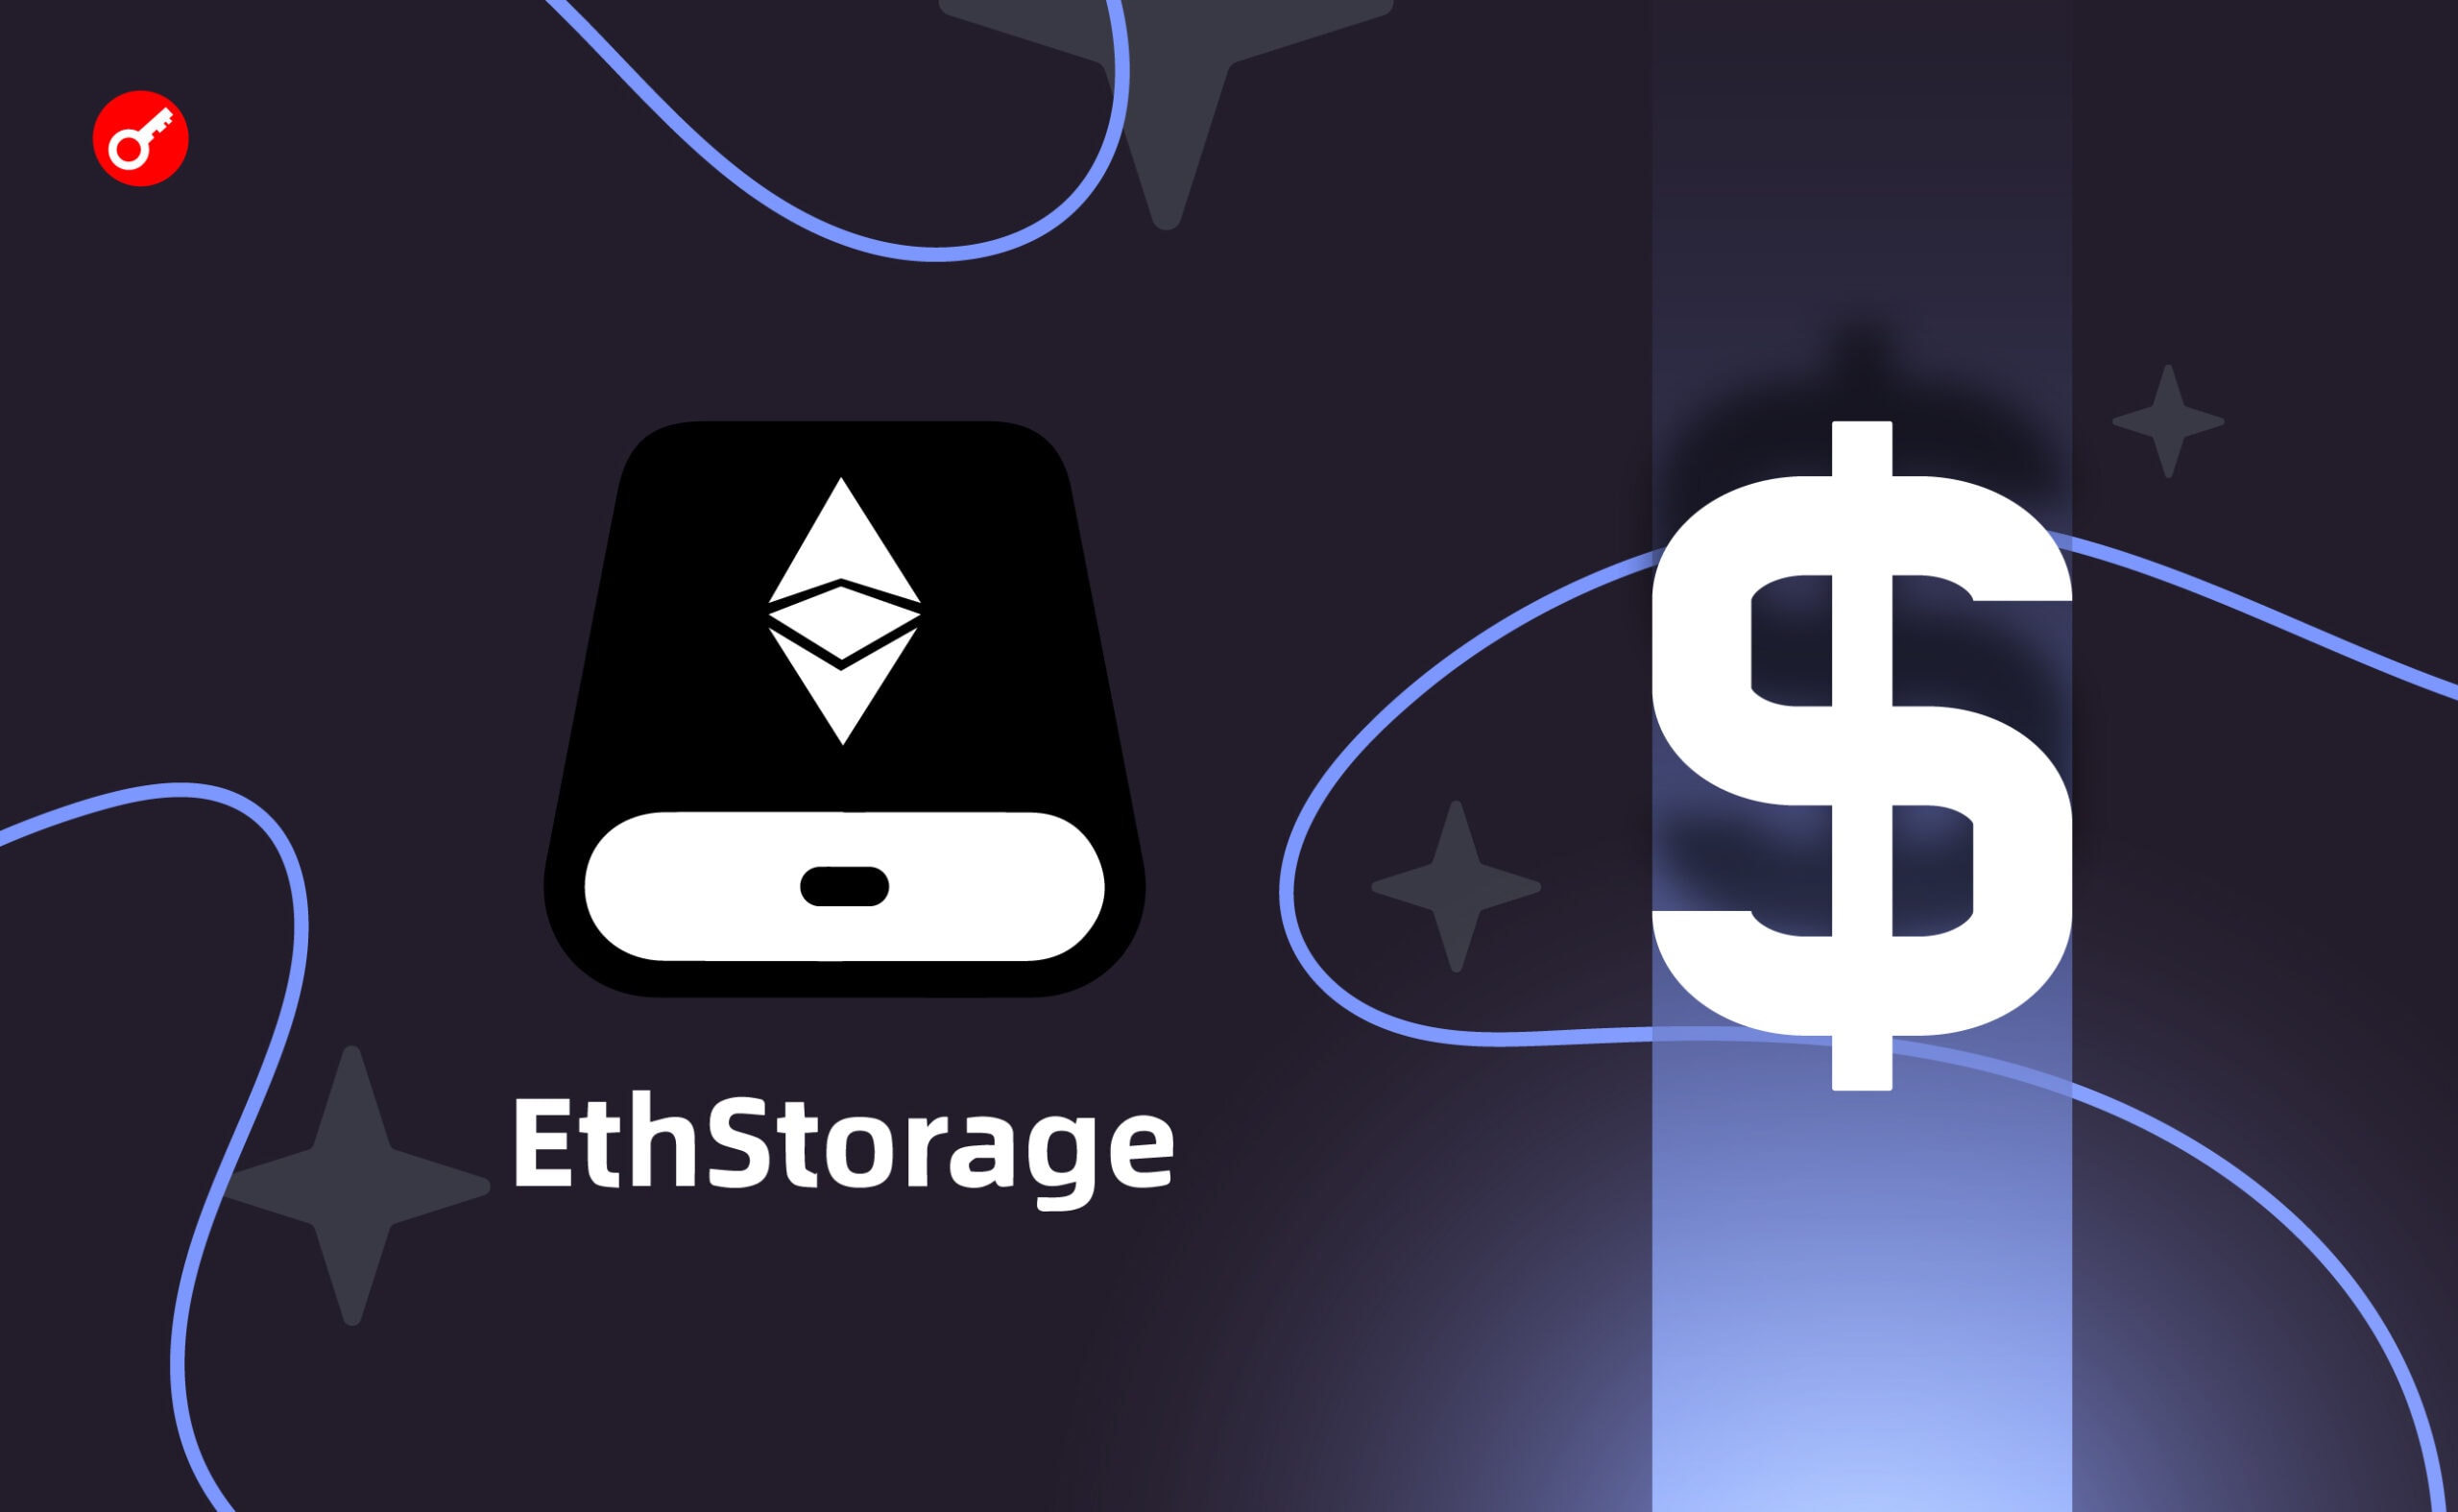 Компанія EthStorage залучила $7 млн інвестицій. Головний колаж новини.